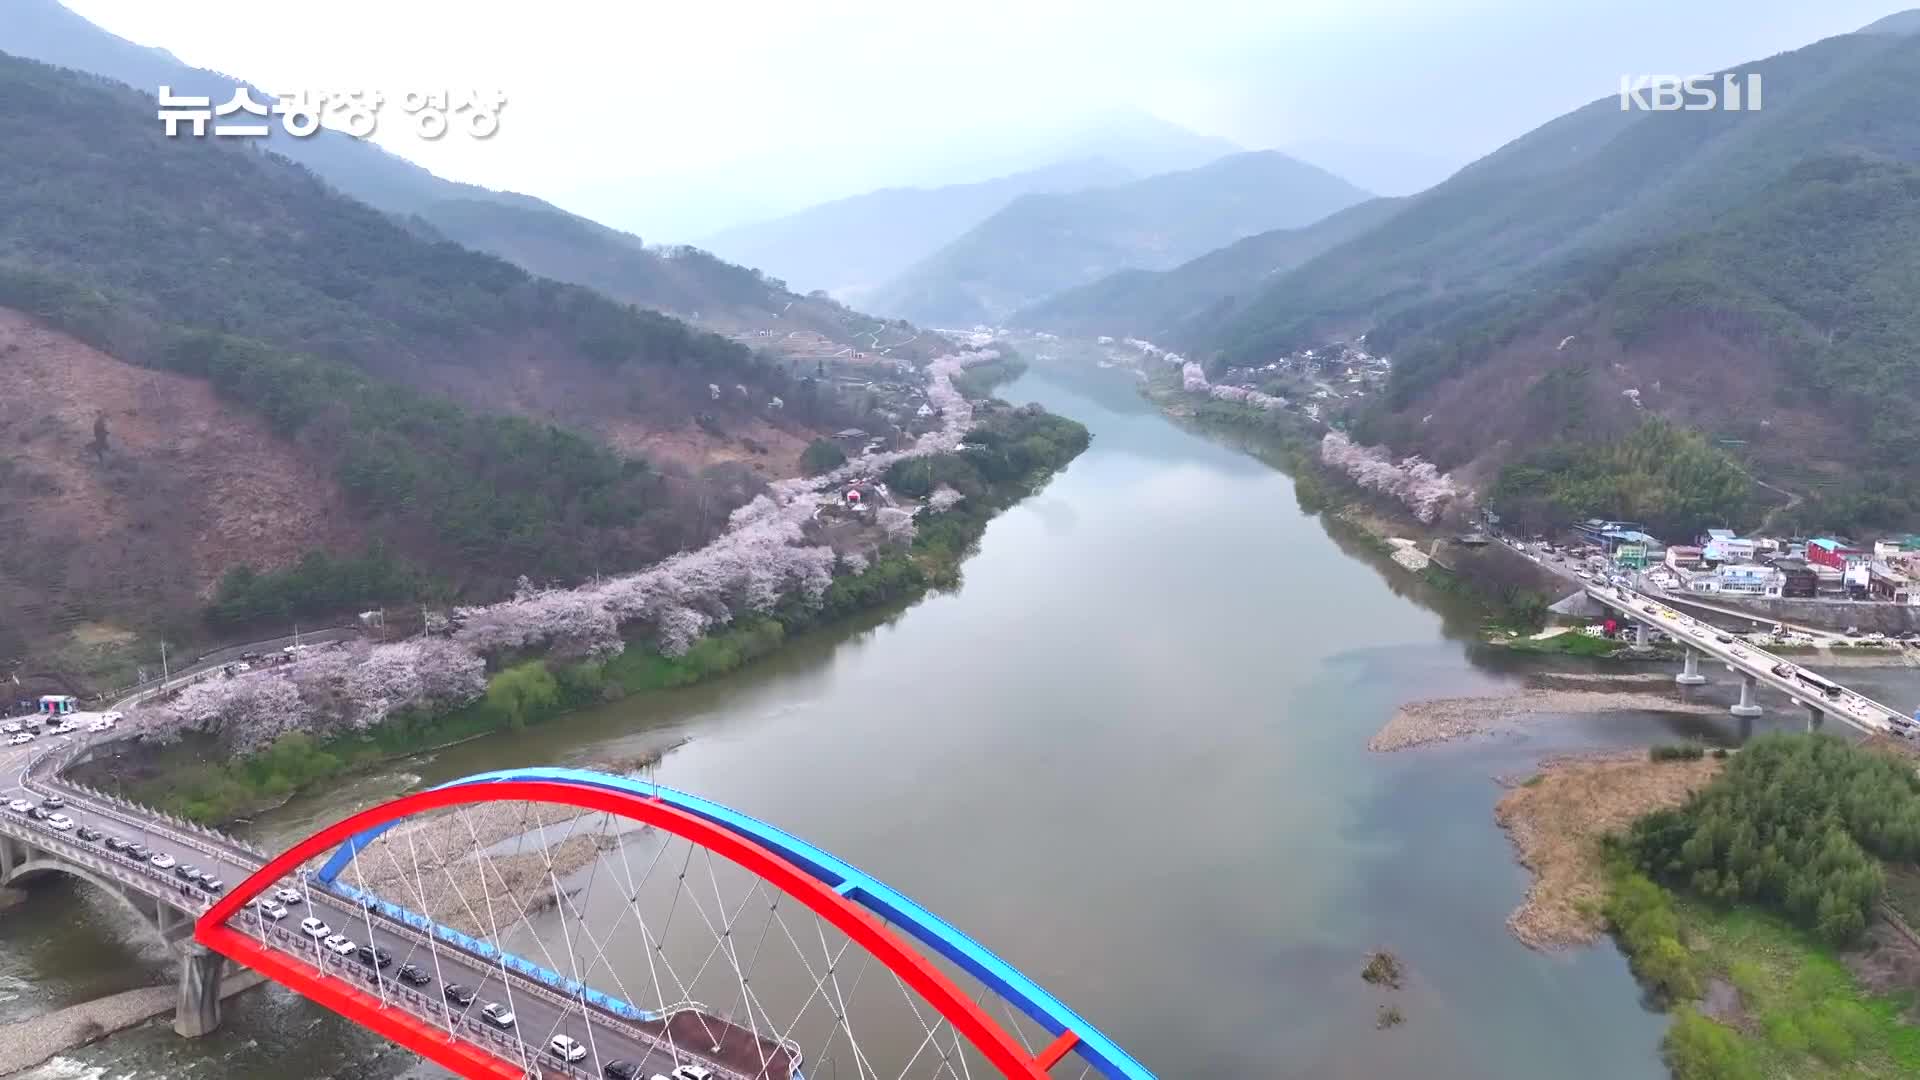 [뉴스광장 영상] 섬진강에 핀 봄